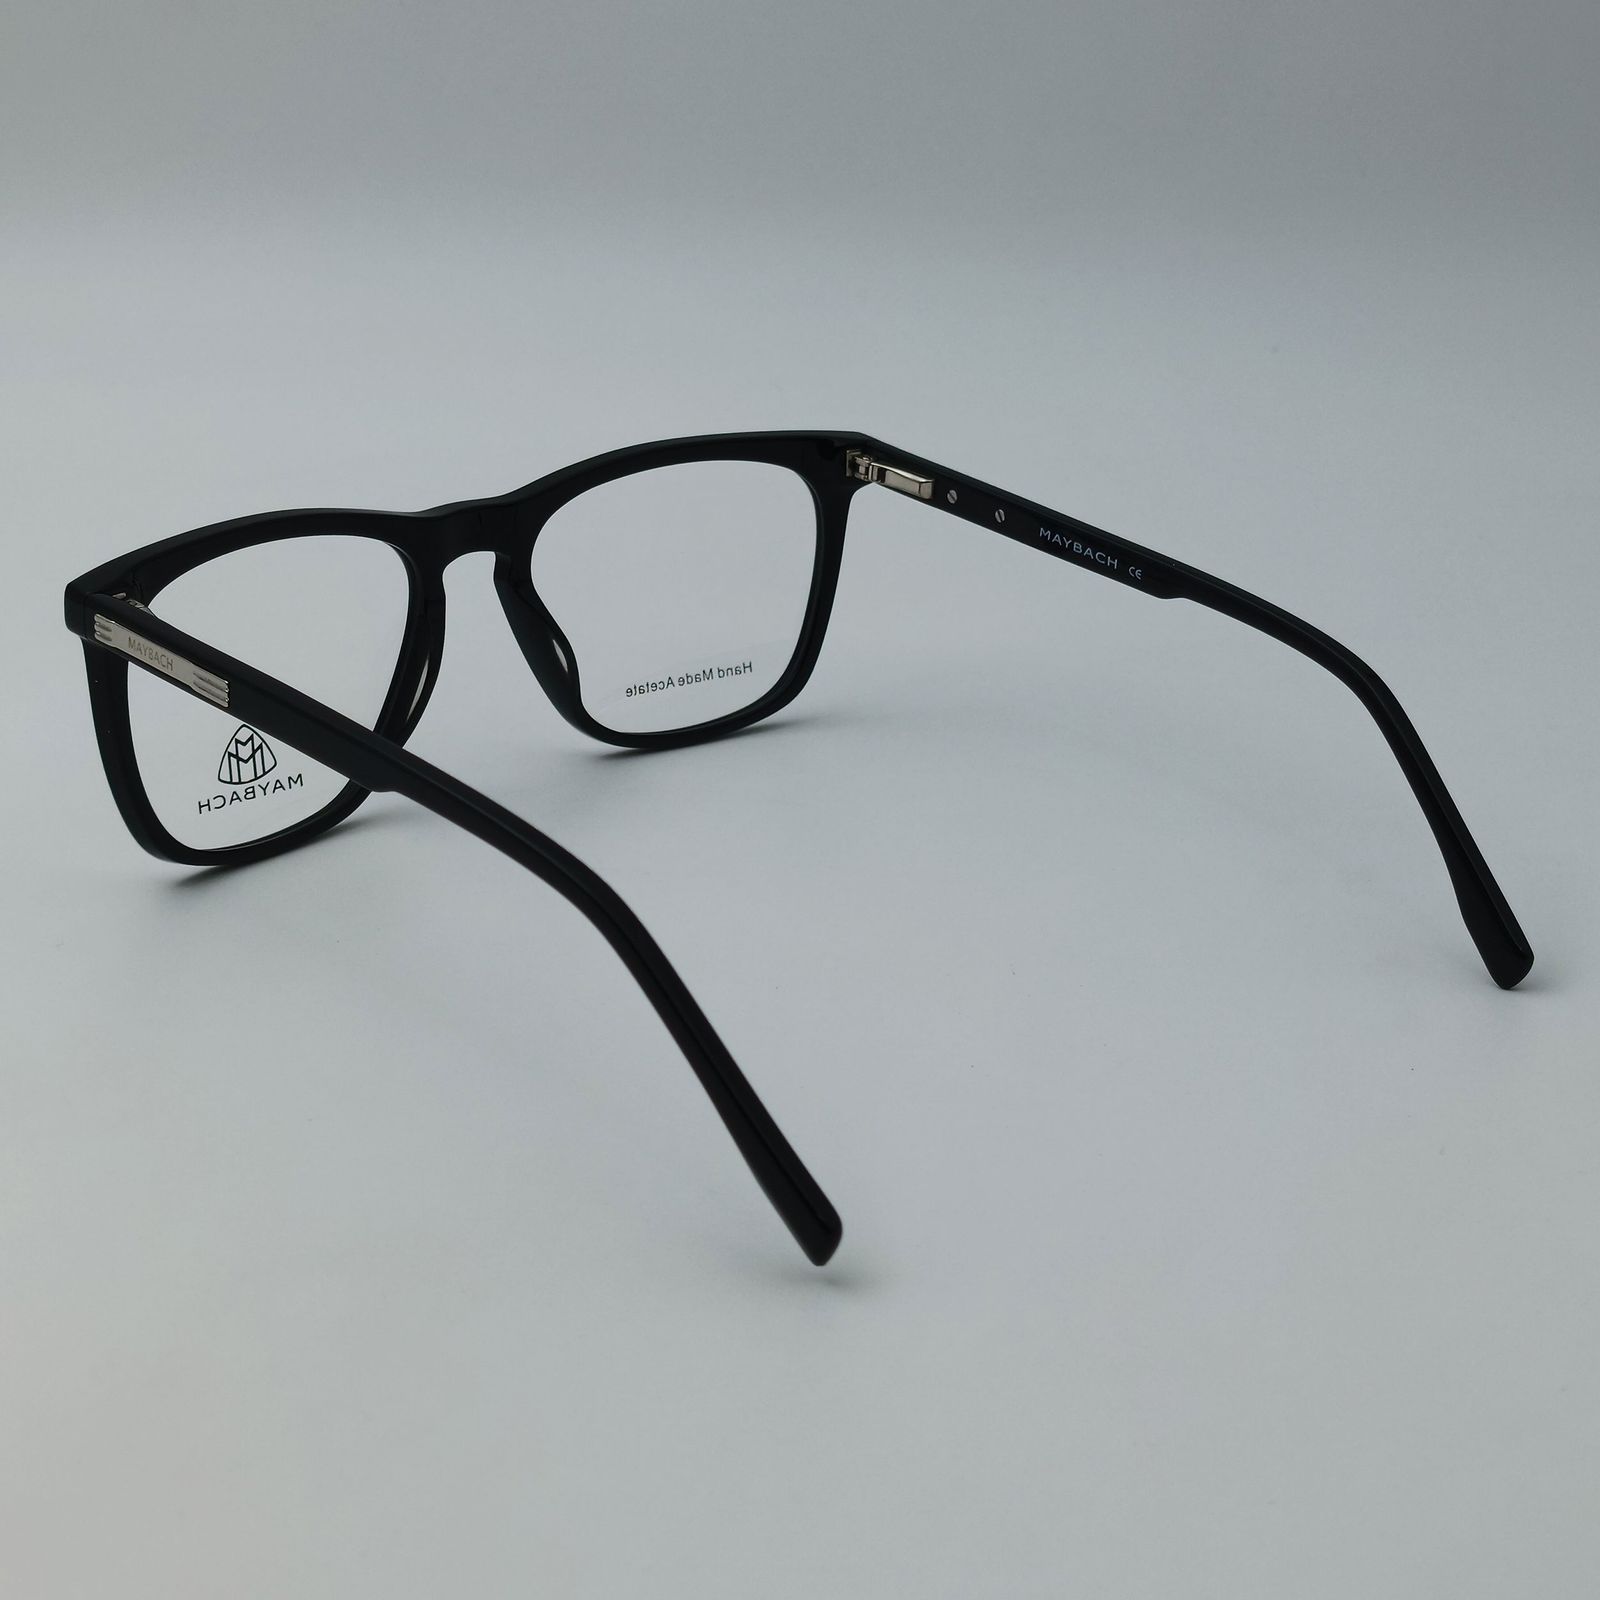 فریم عینک طبی میباخ مدل 6504 C1 -  - 5